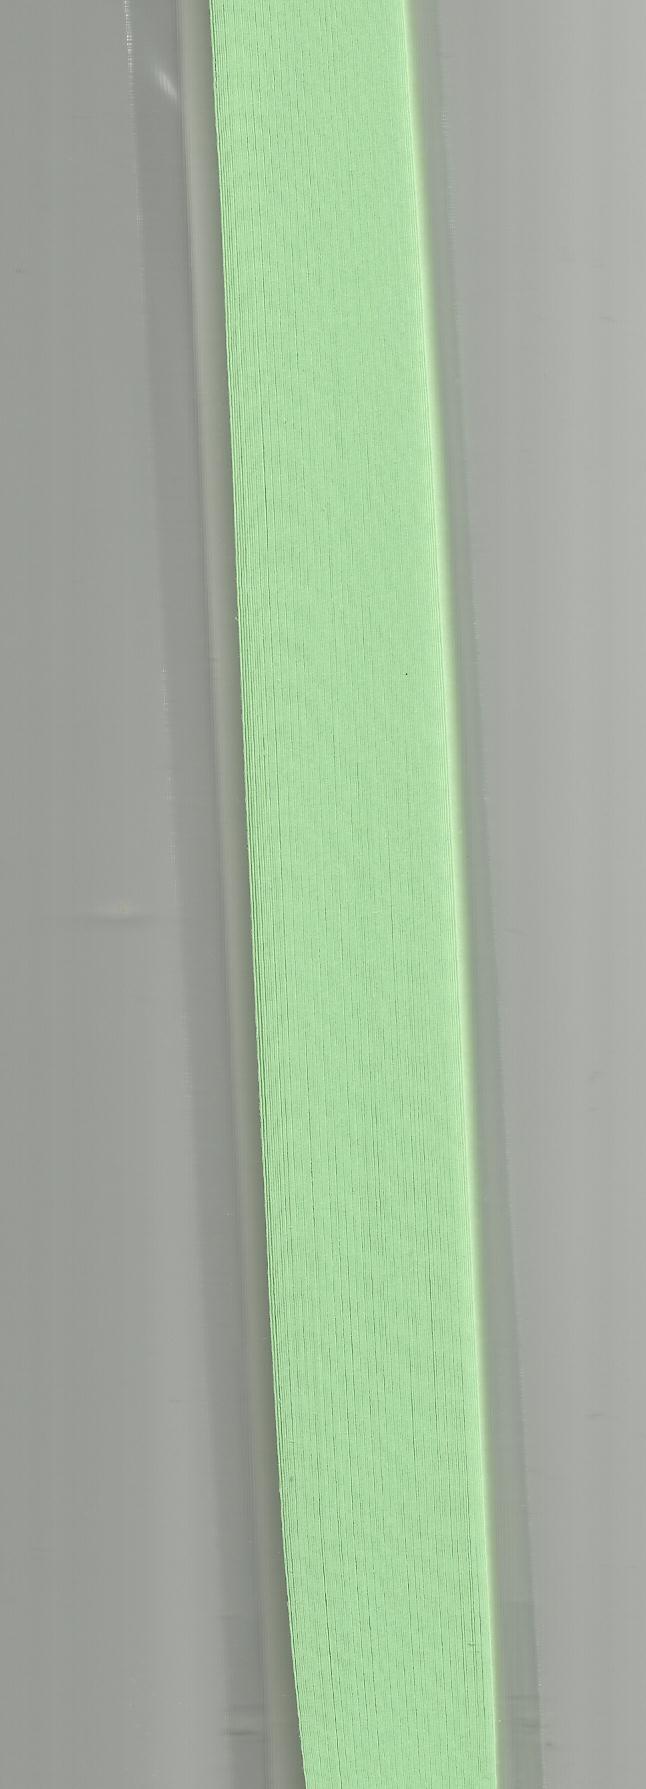 набор для квиллинга зеленый пастельный